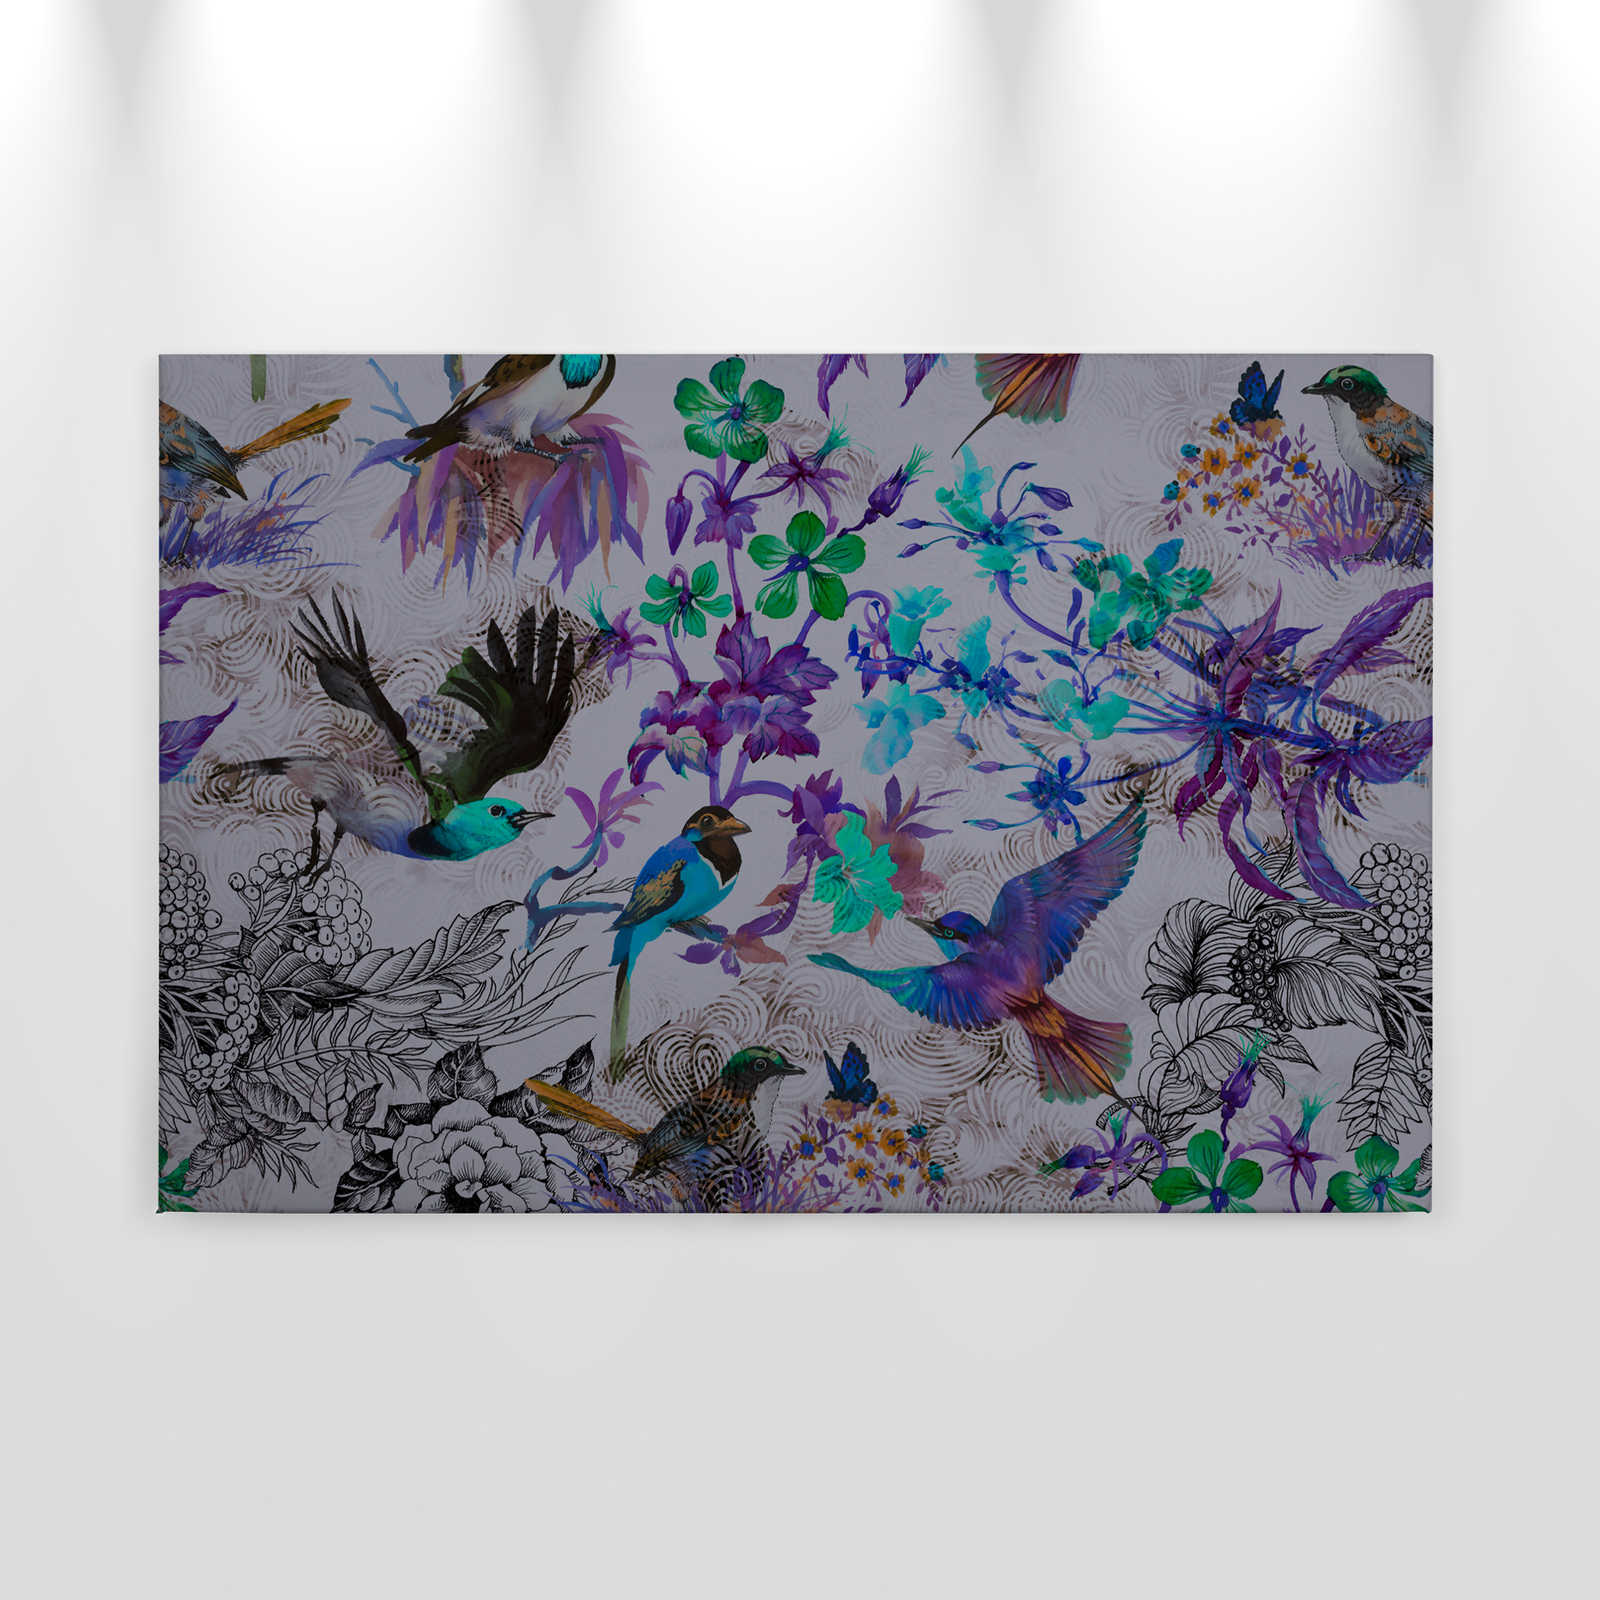             Quadro su tela viola con fiori e uccelli - 0,90 m x 0,60 m
        